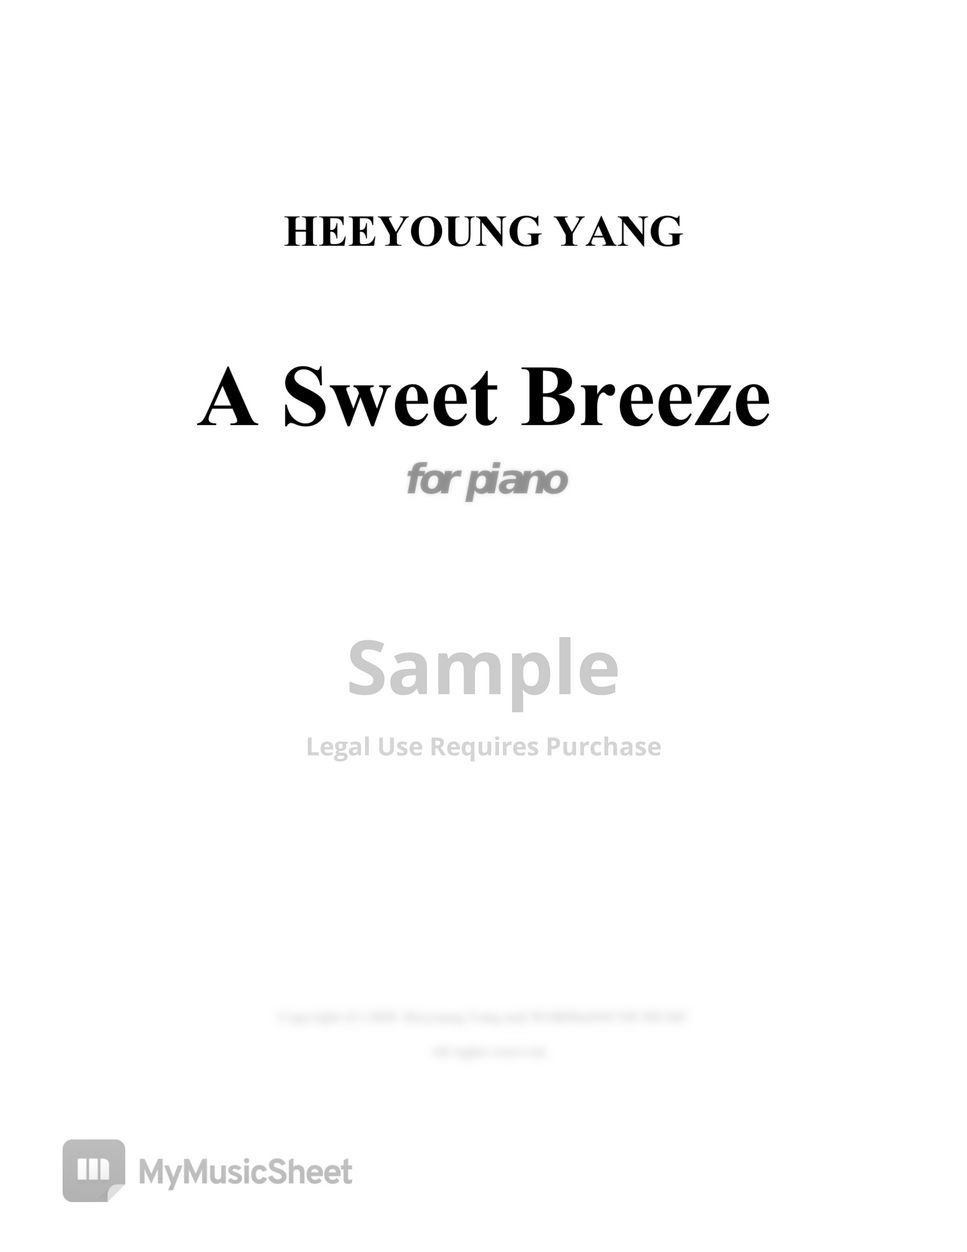 Heeyoung Yang - A Sweet Breeze for piano (Gun-bam Taryung) by Heeyoung Yang